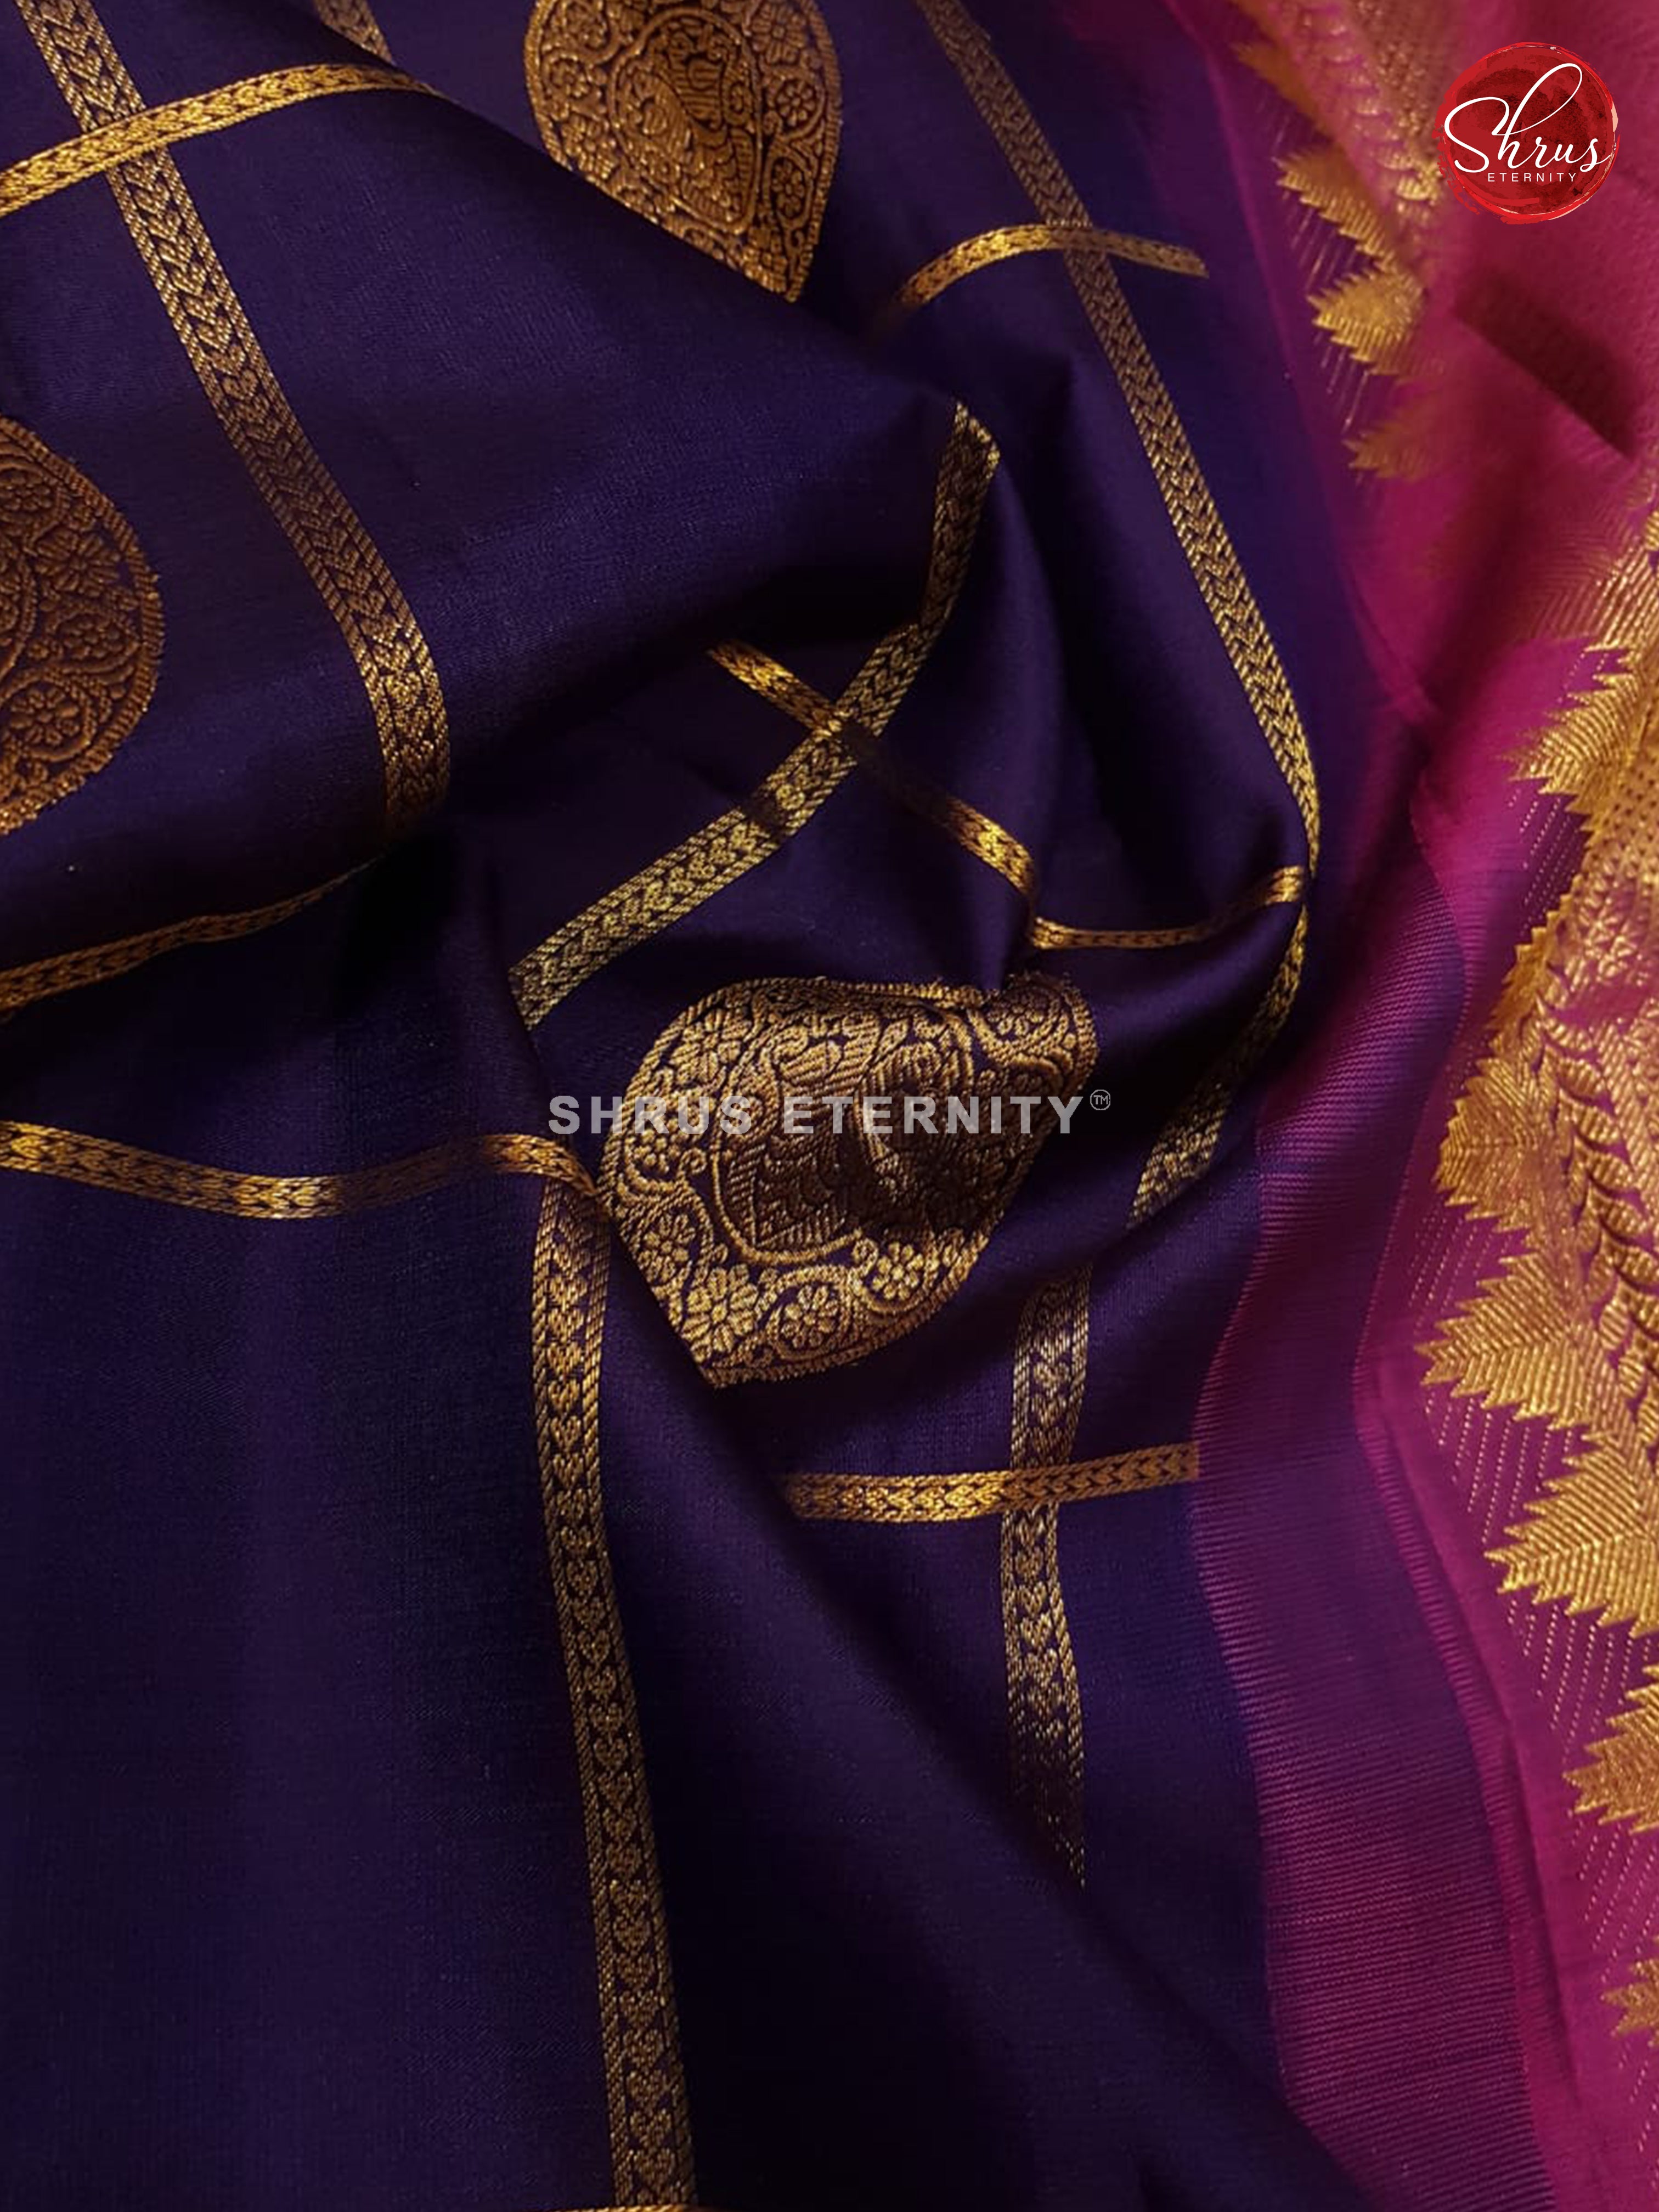 Blue & Majenta - Kanchipuram Silk - Shop on ShrusEternity.com